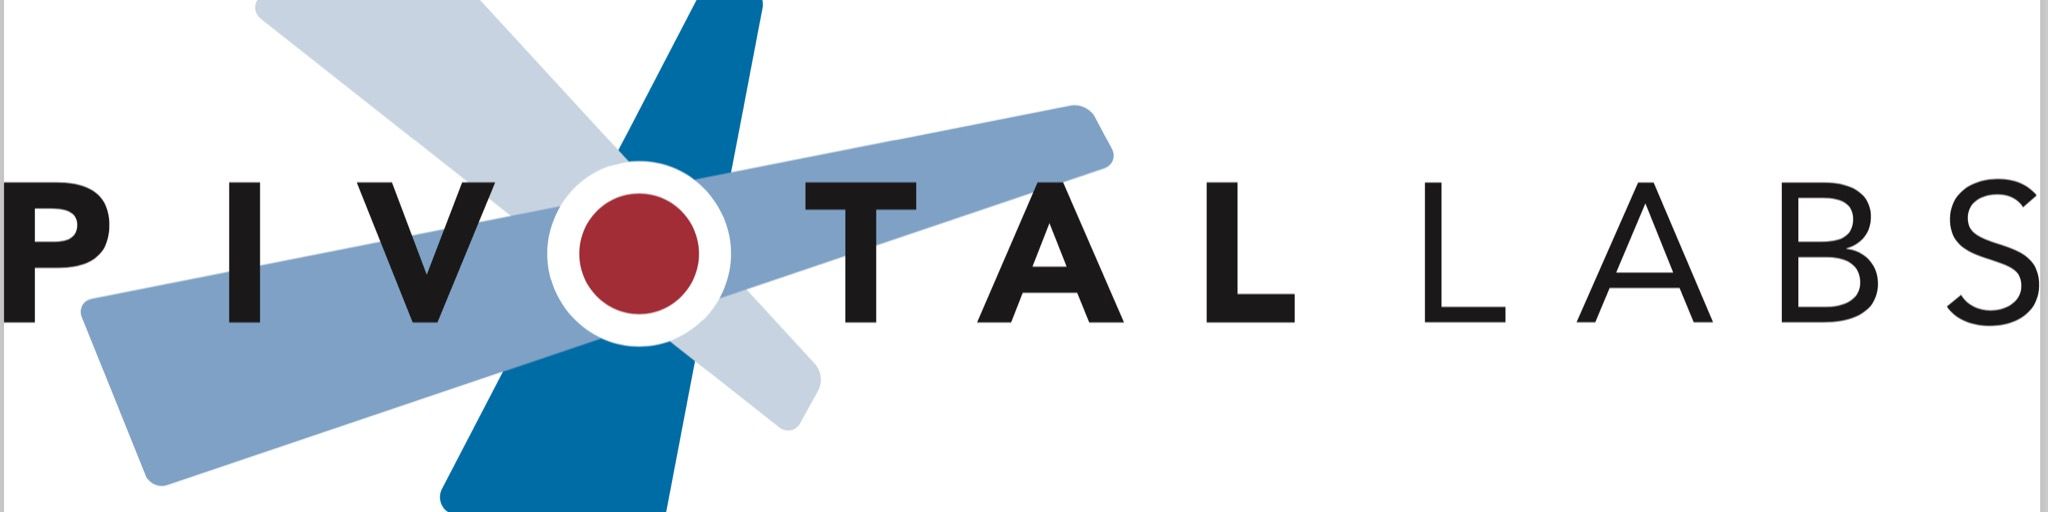 Pivotal Labs logo